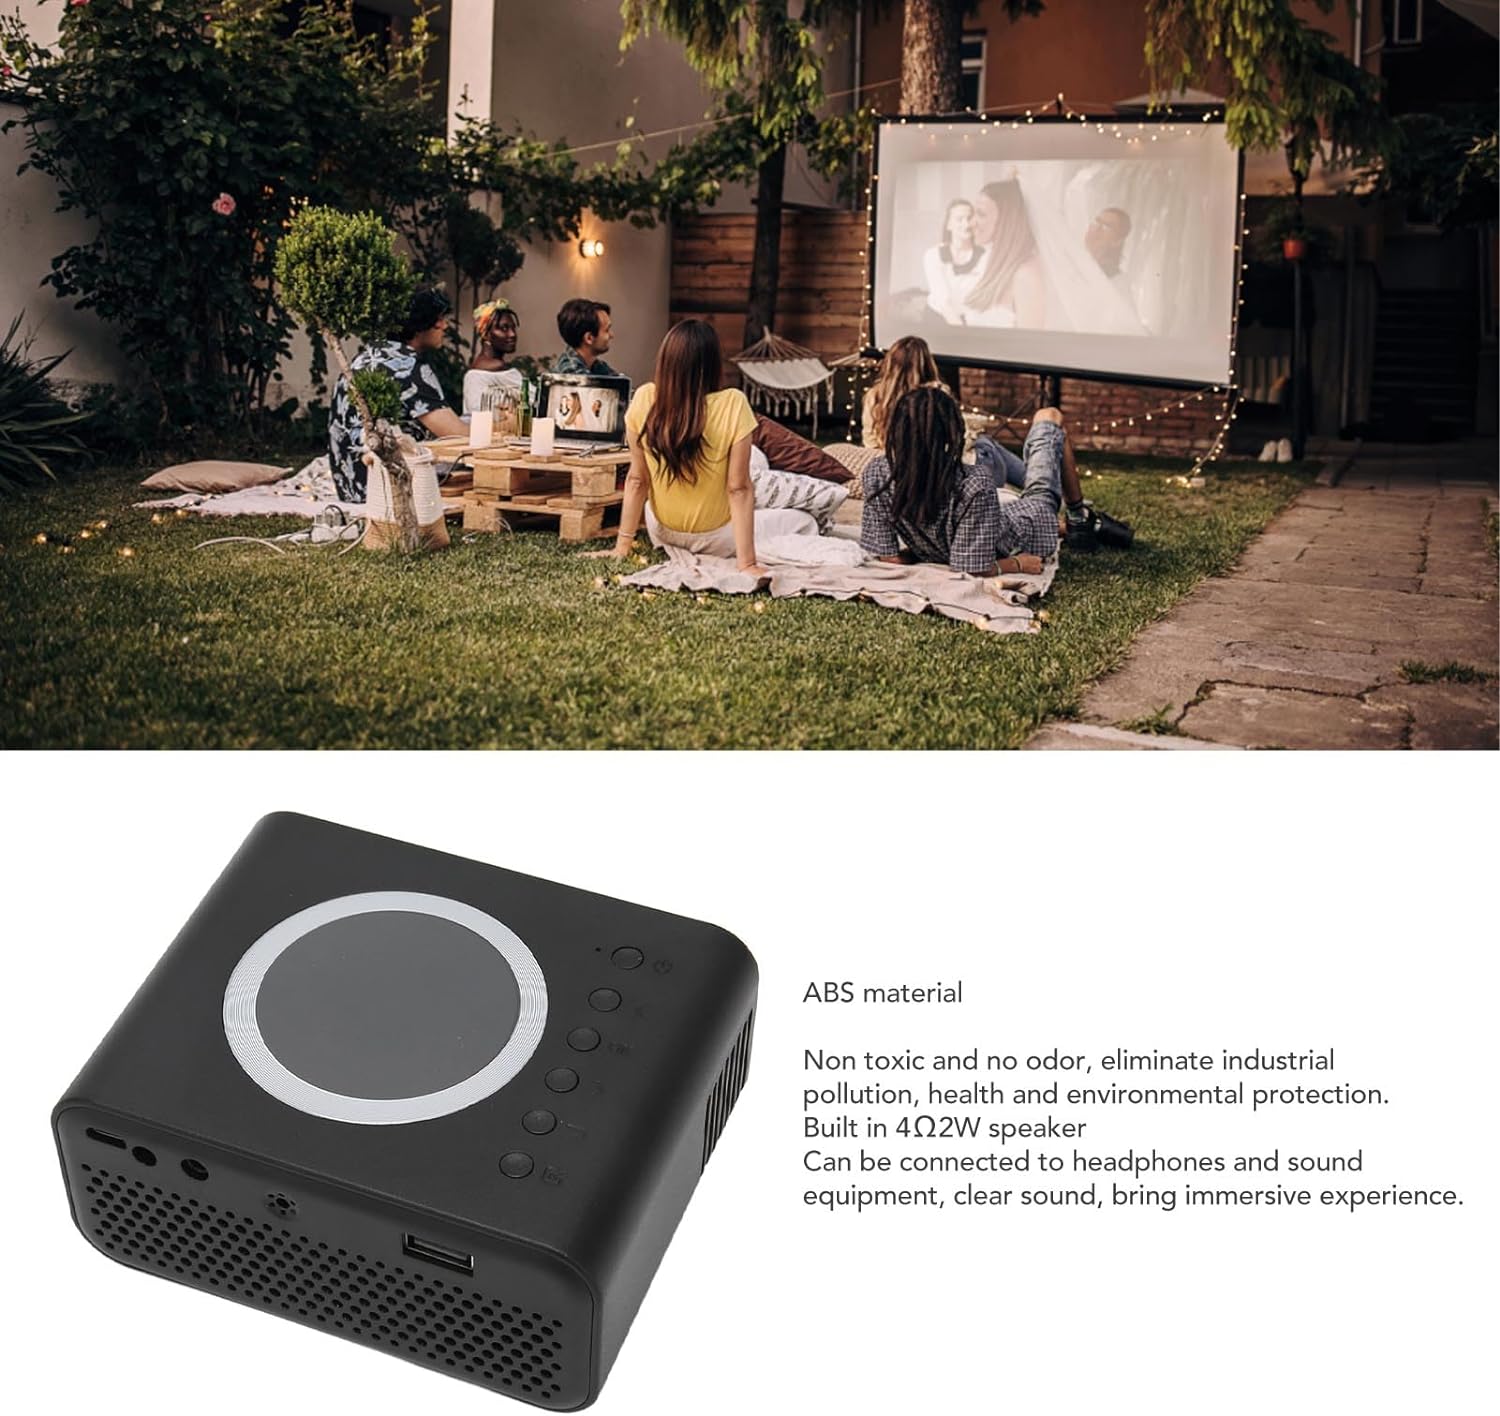 YT300 LED جهاز عرض فيديو صغير للمنزل